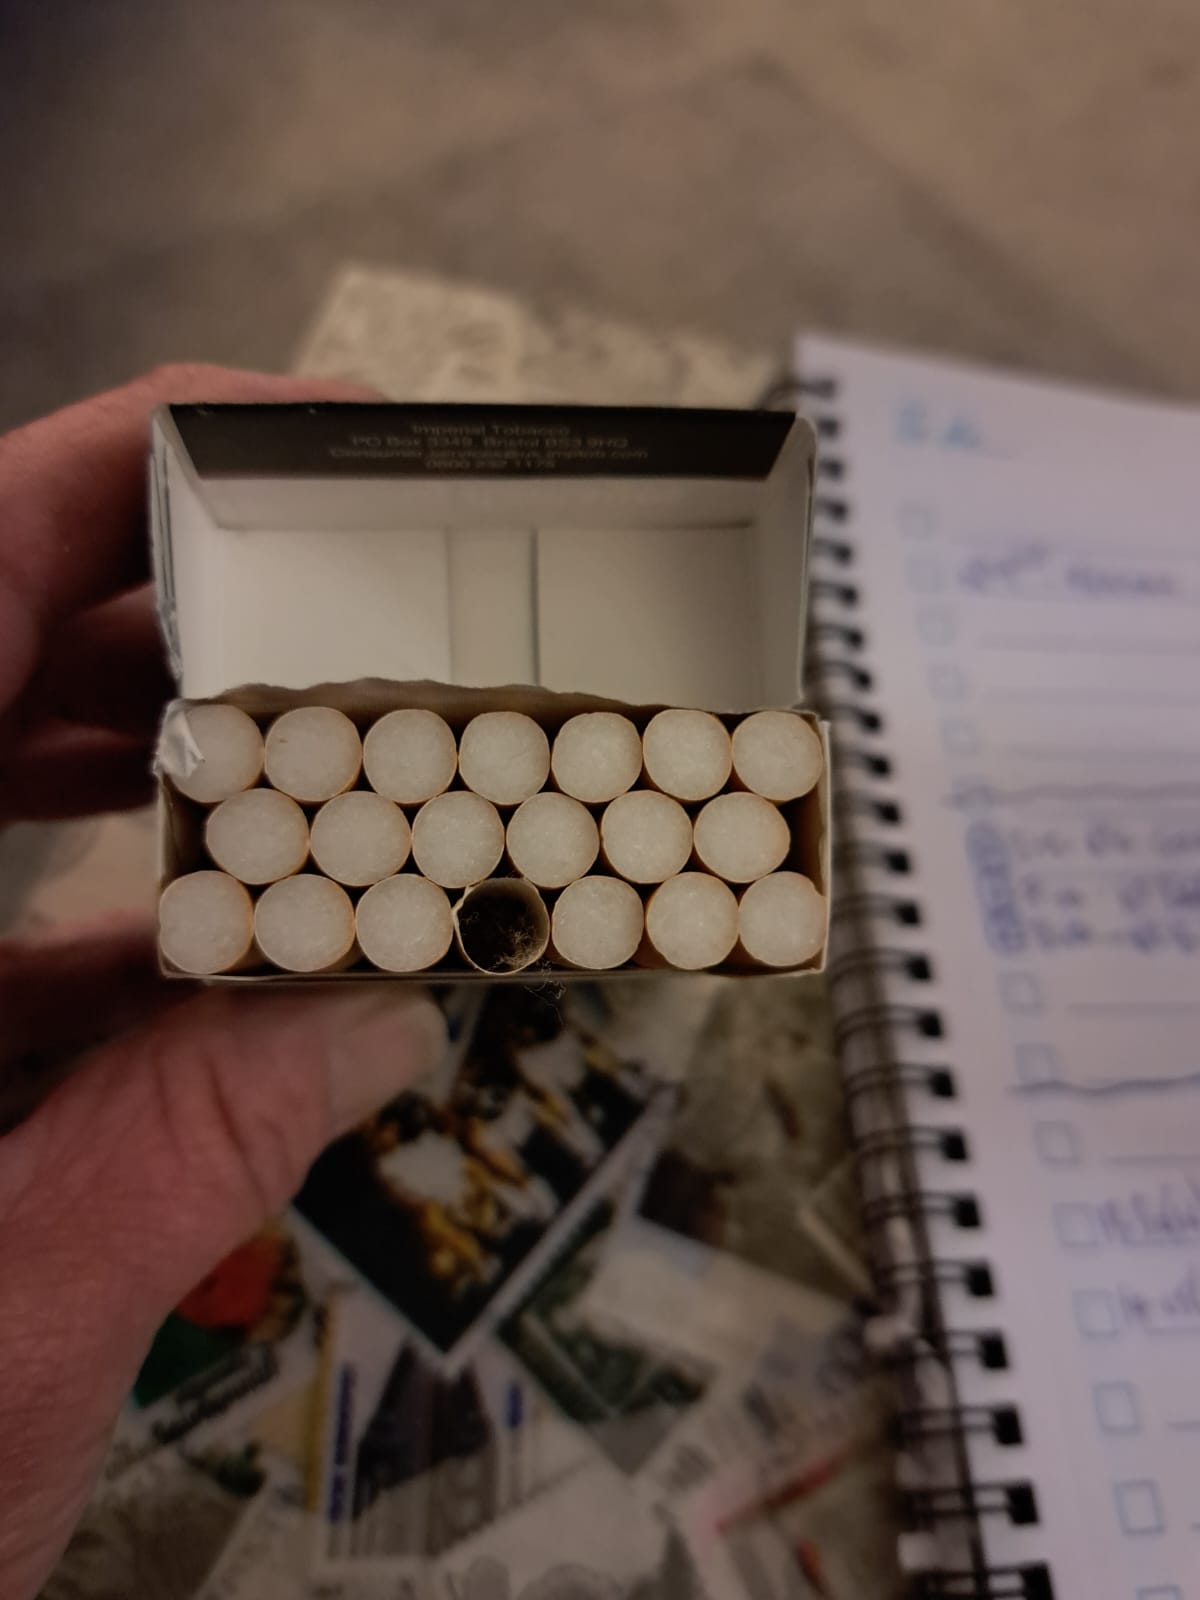 Faulty cigarette